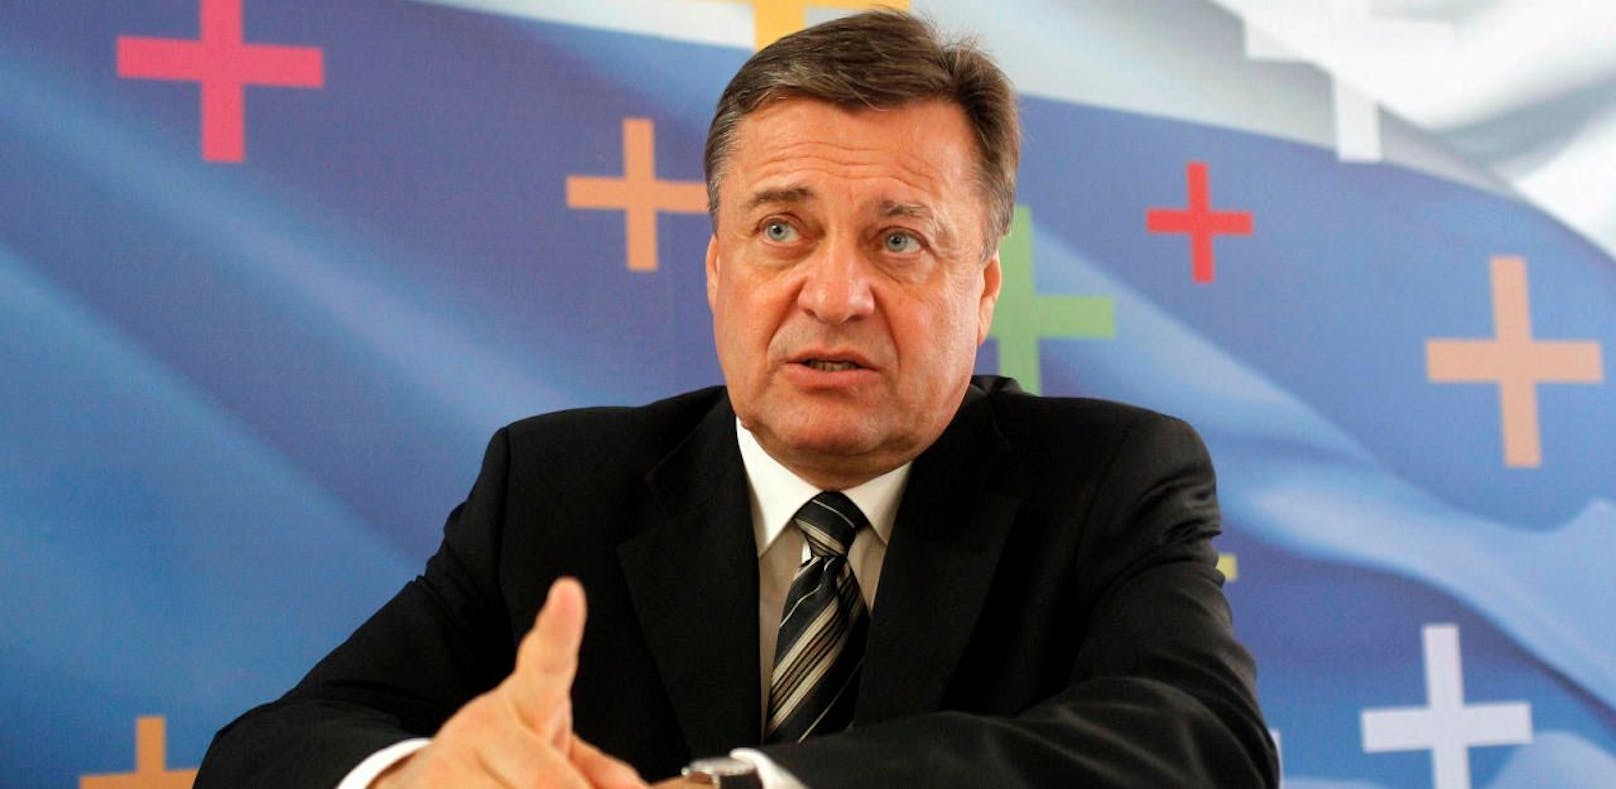 Zoran Jankovic ist als Bürgermeister der slowenischen Stadt Ljubljana unter Korruptionsverdacht geraten.